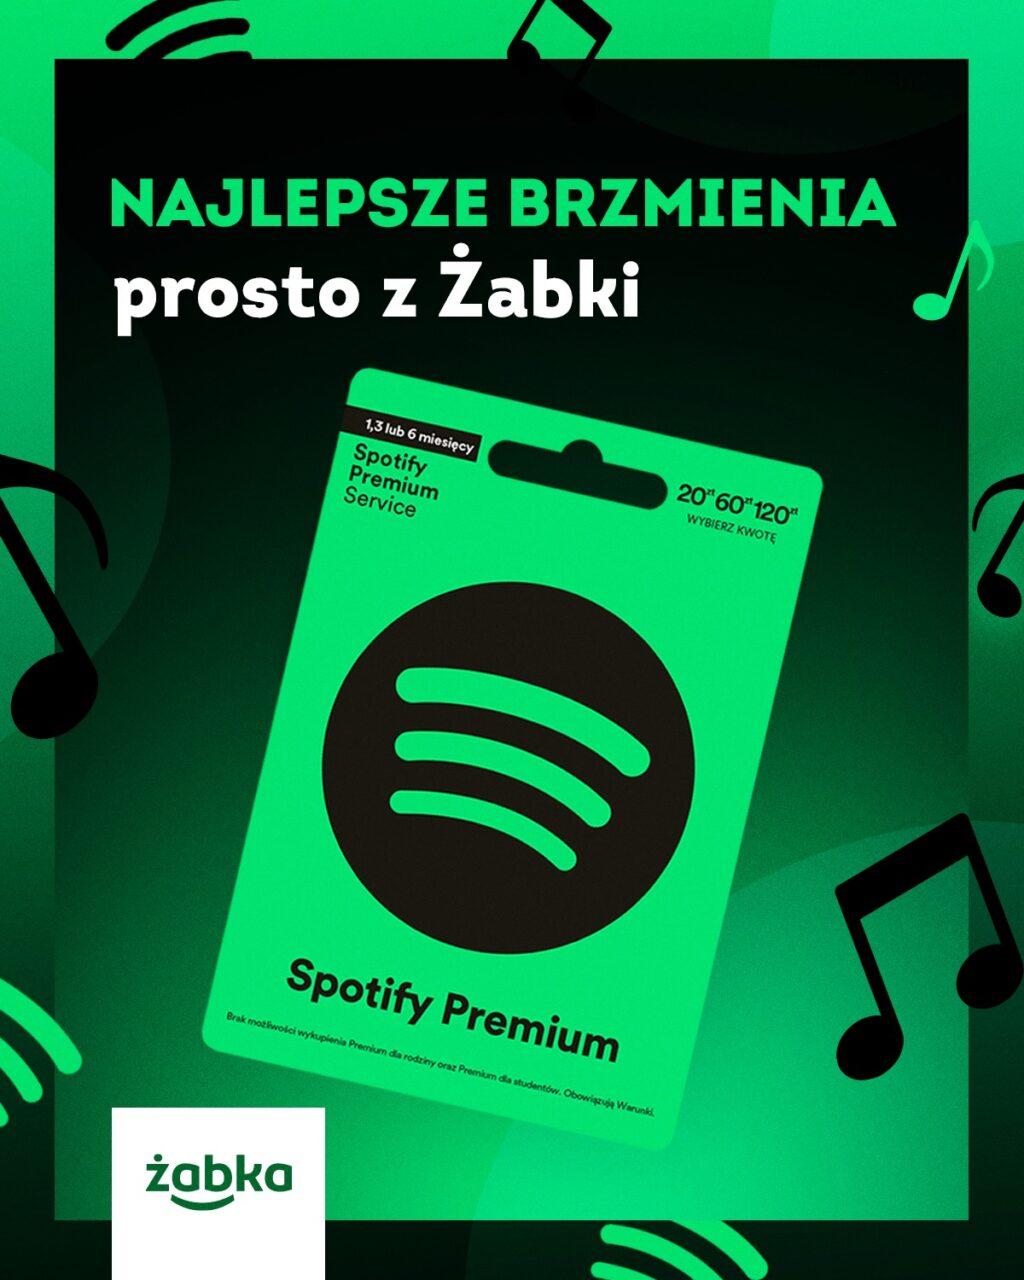 Spotify Premium za darmo. Reklama w zielonych odcieniach z logo Żabki i napisem "NAJLEPSZE BRZMIENIA prosto z Żabki" w górnej części, oraz przechodzącymi w tle graficznymi nutami muzycznymi.